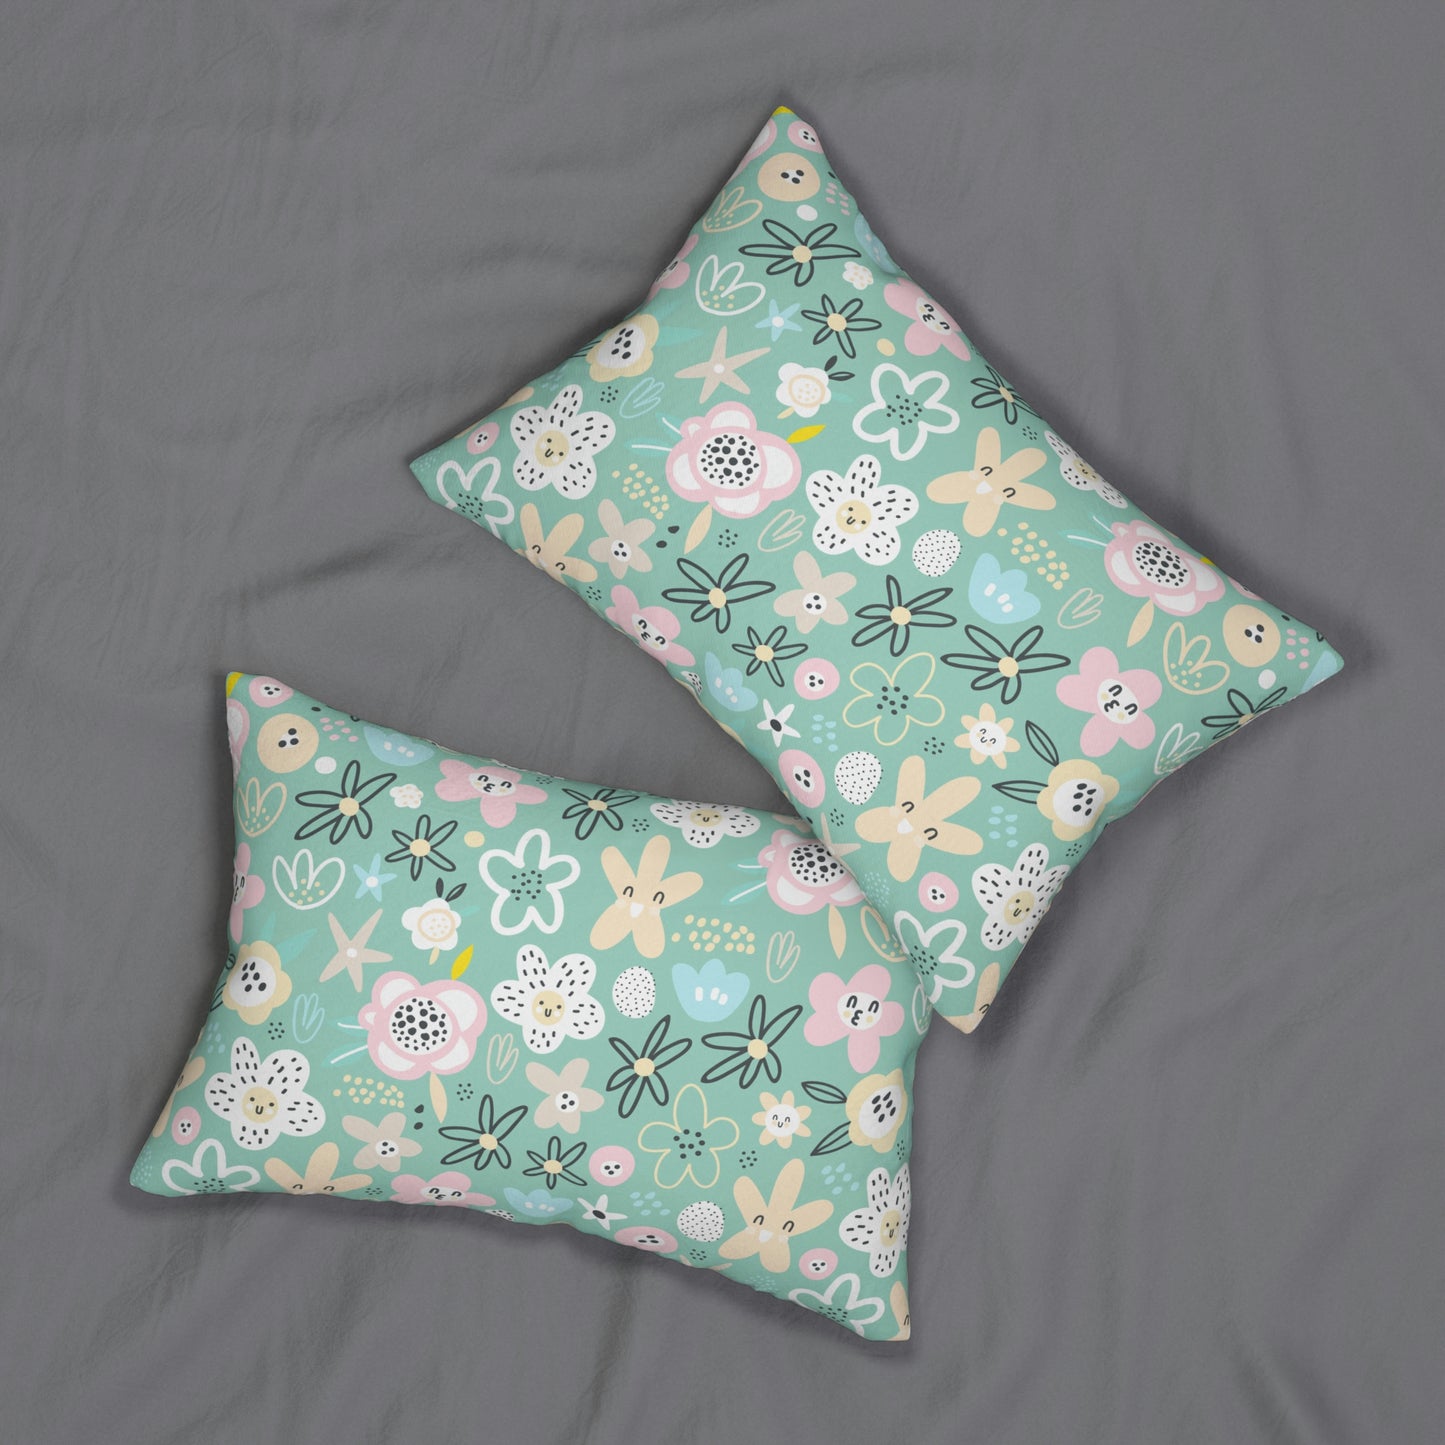 Abstract Flowers Spun Polyester Lumbar Pillow